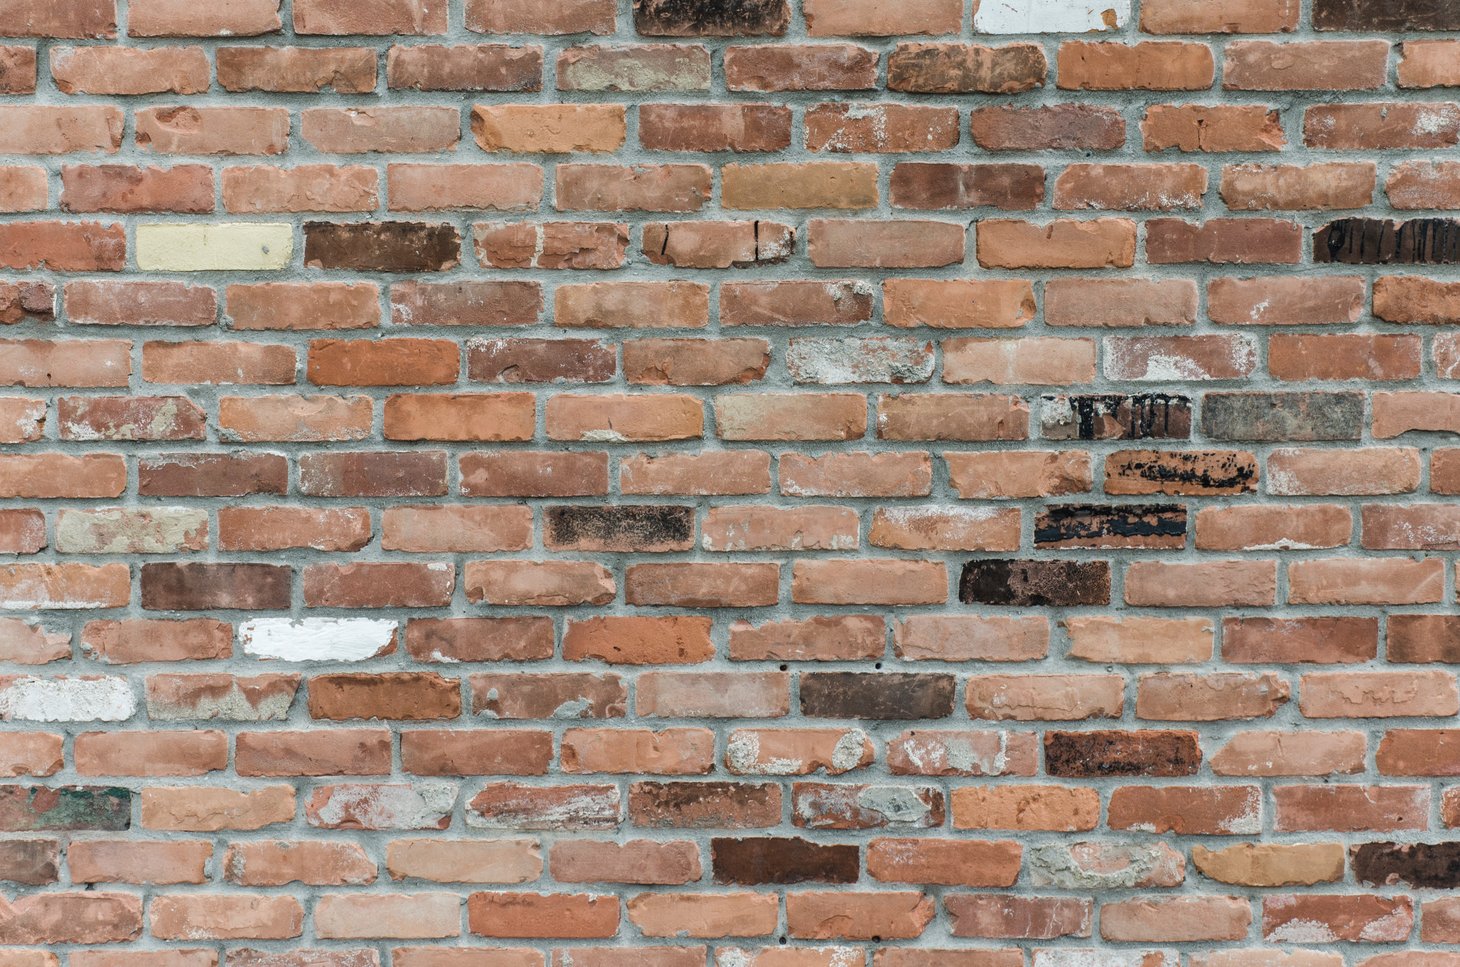 Image of internal brick wall